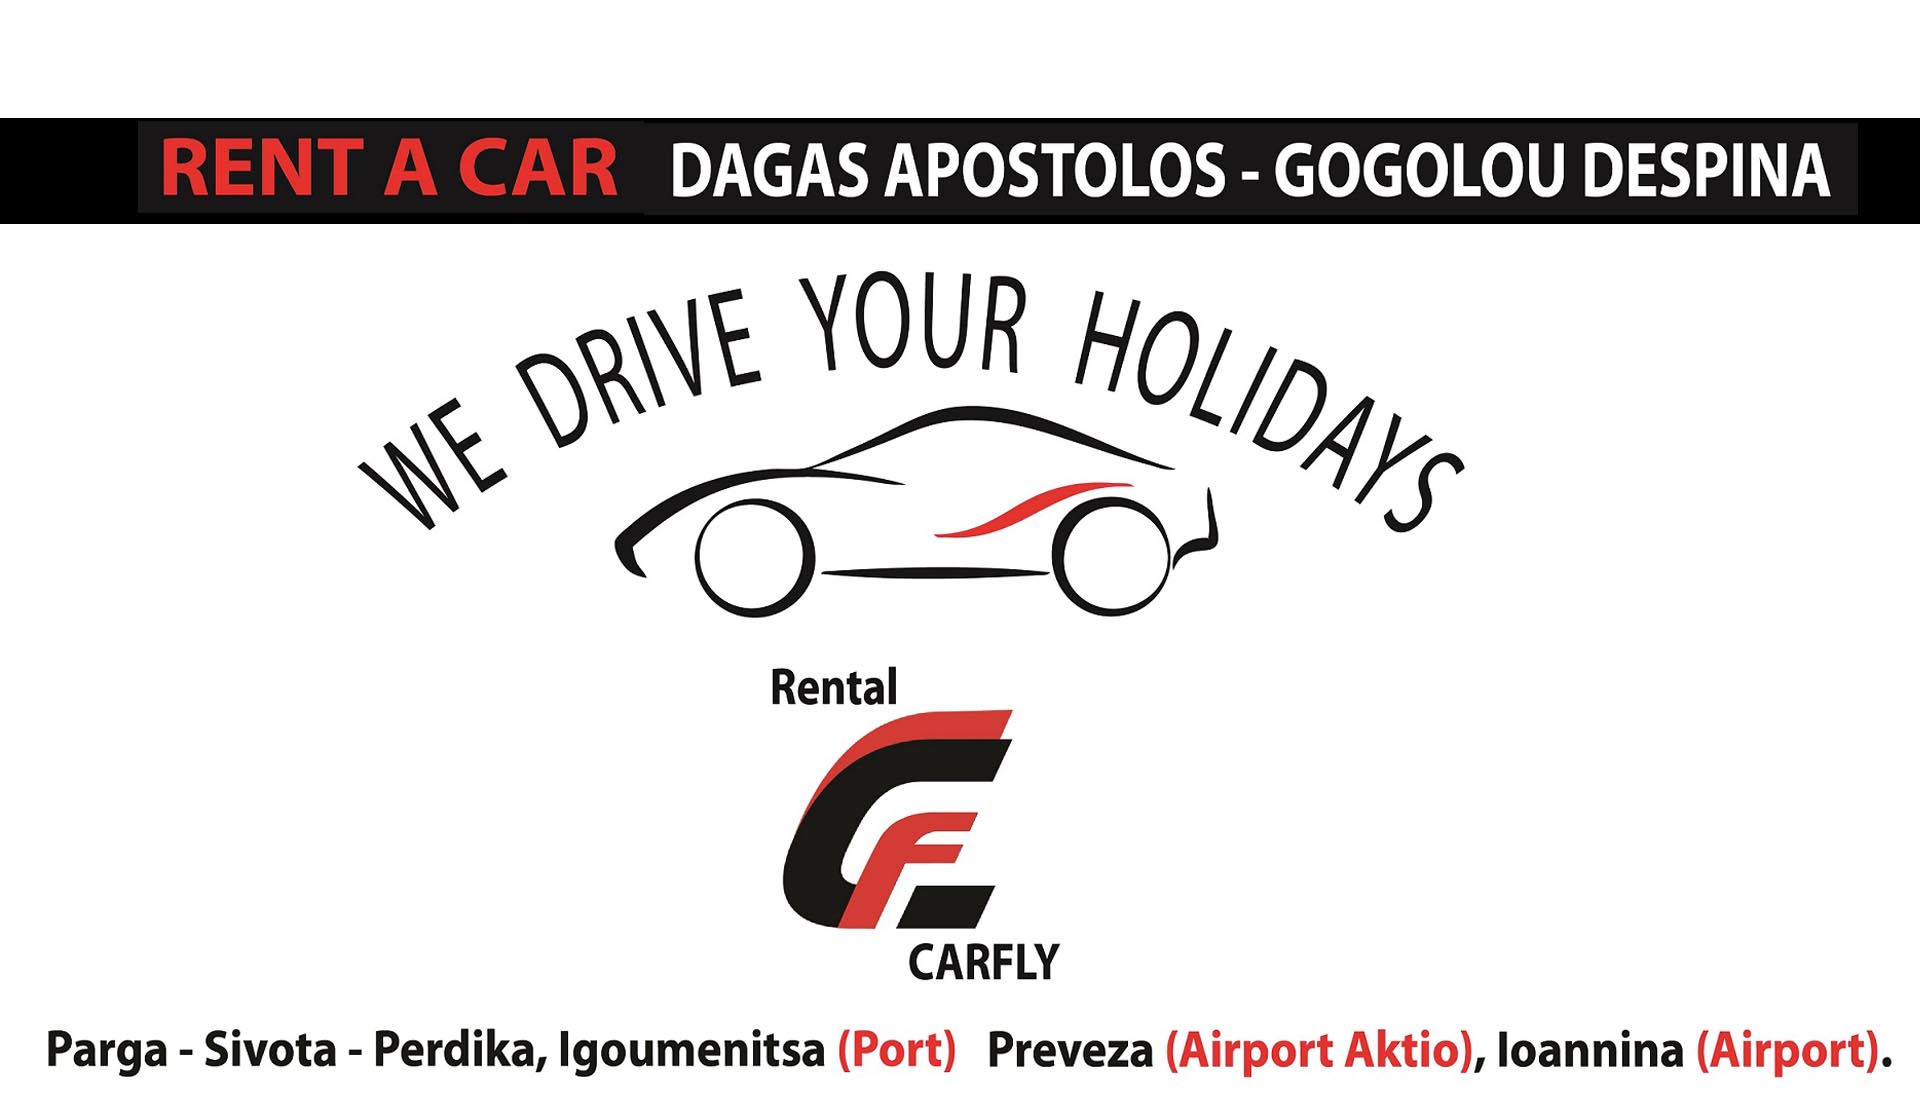 Carfly Car Rentals in Parga, Sivota, Perdika, Igoumenitsa, Preveza, Ioannina!